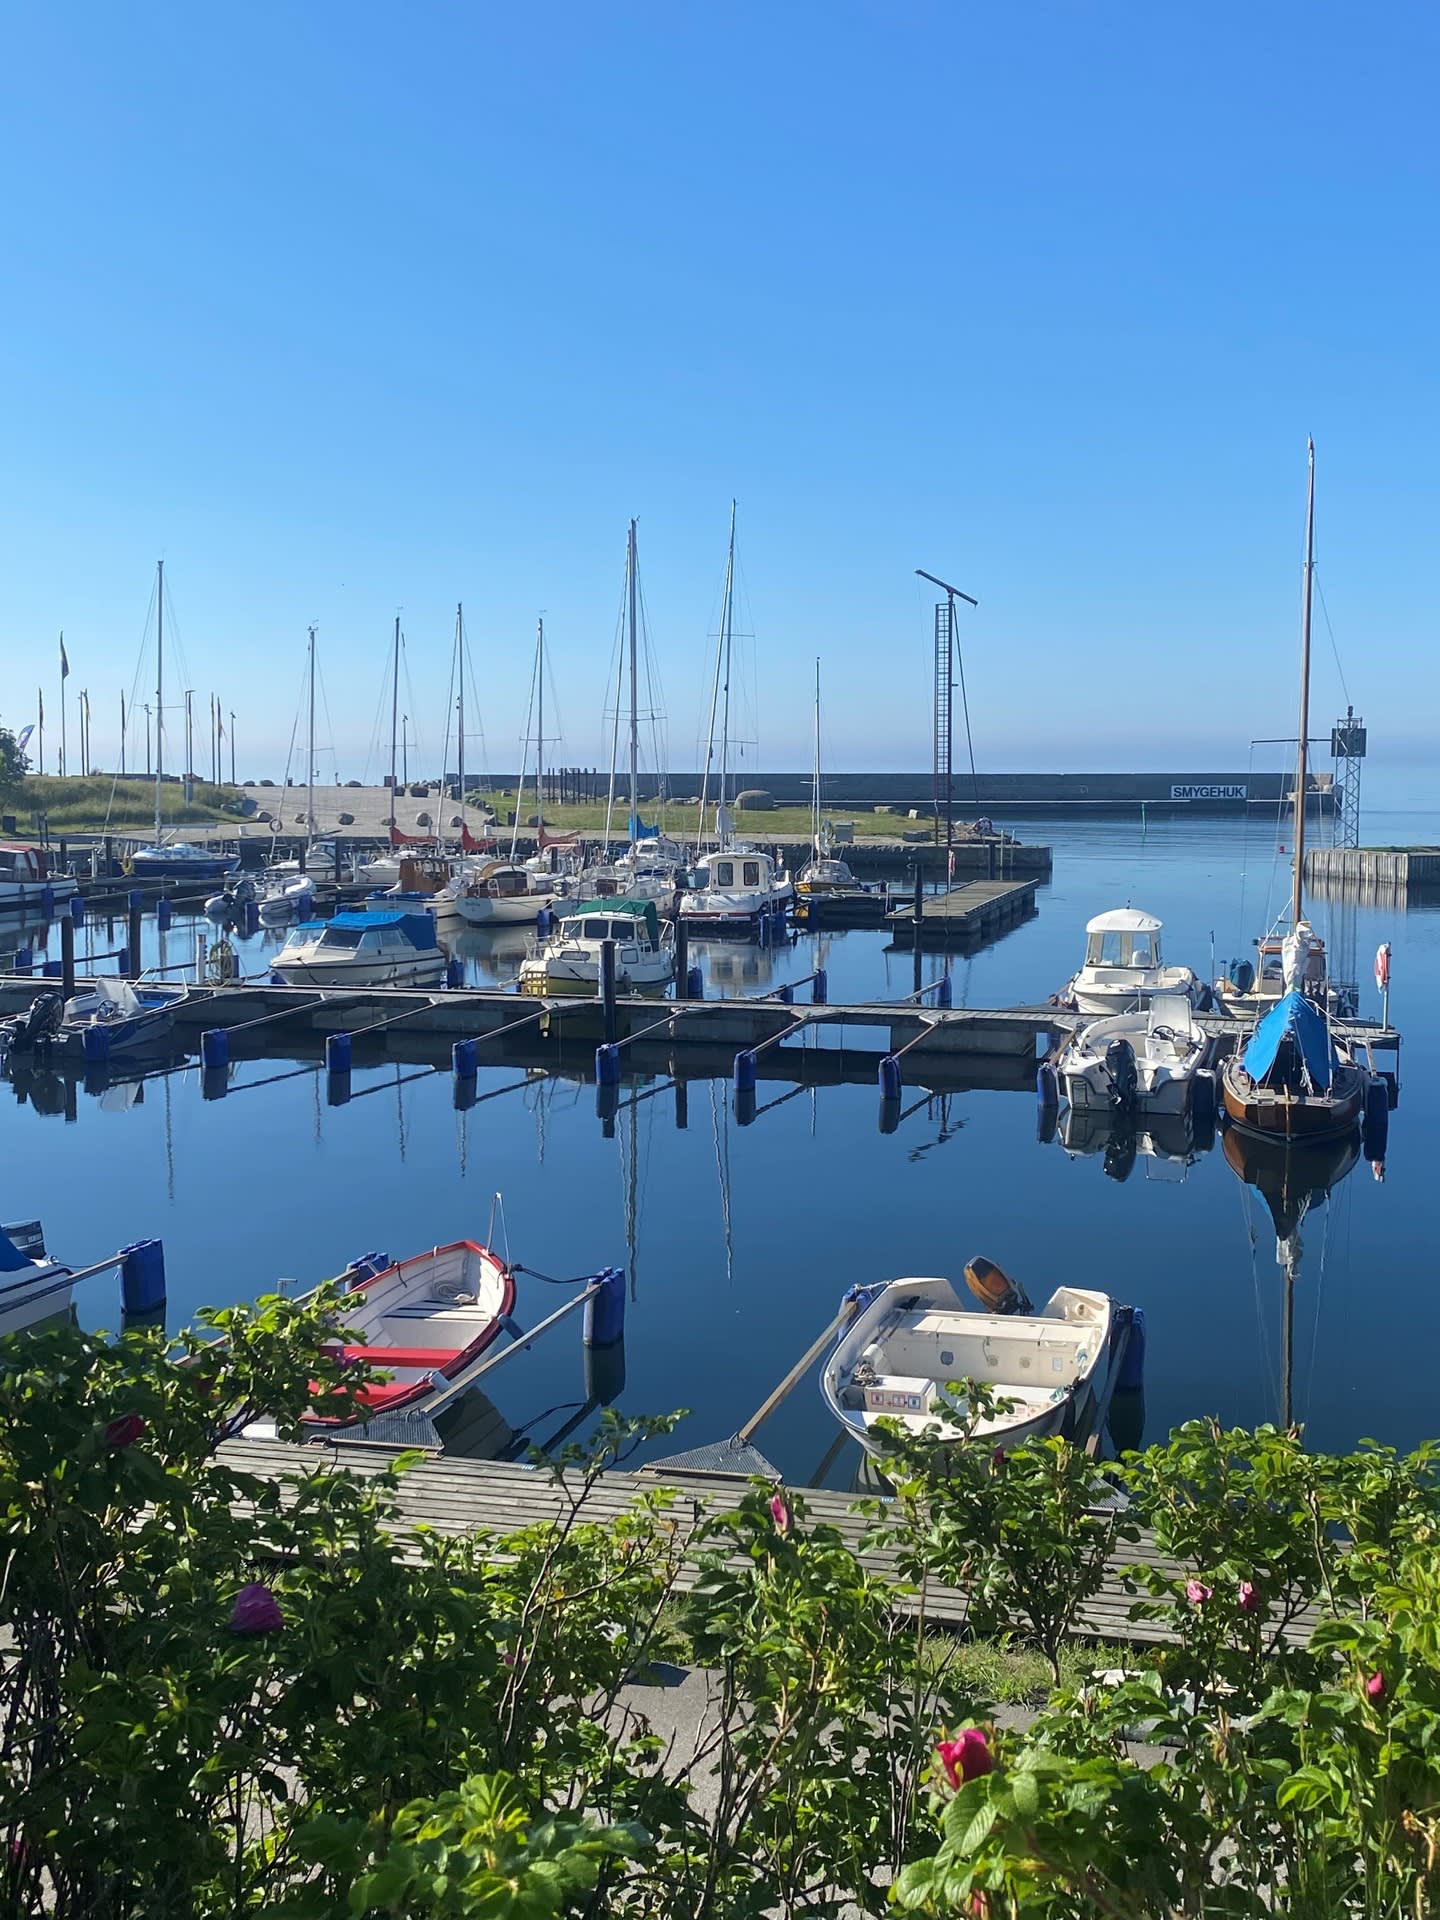 Några hundra meter bort ligger Smyges småbåtshamn och Sveriges sydligaste udde.